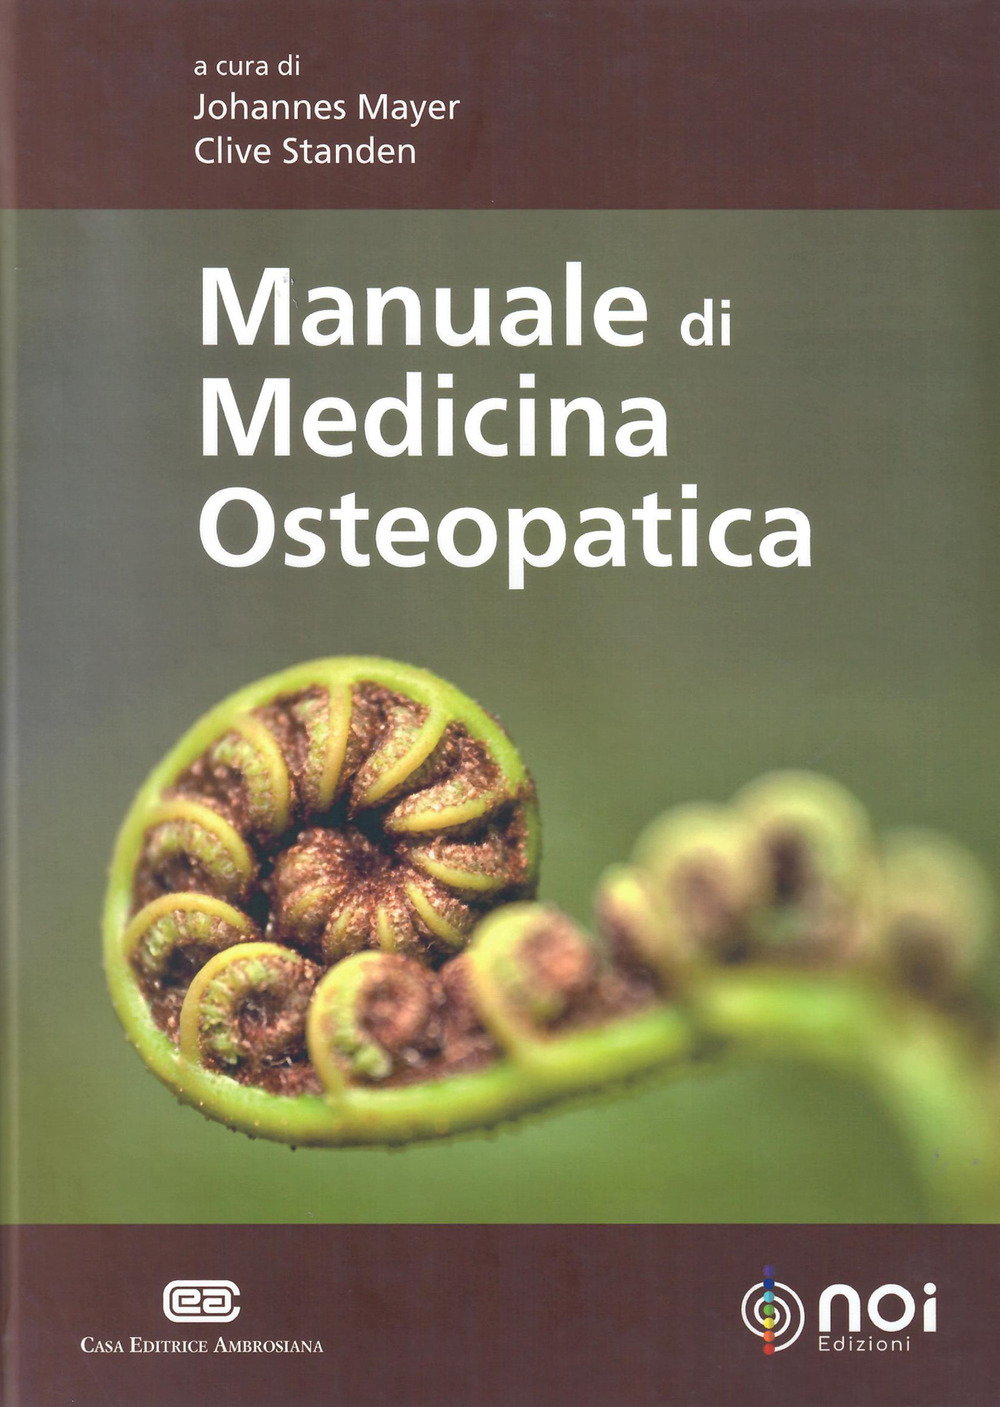 Image of Manuale di medicina osteopatica